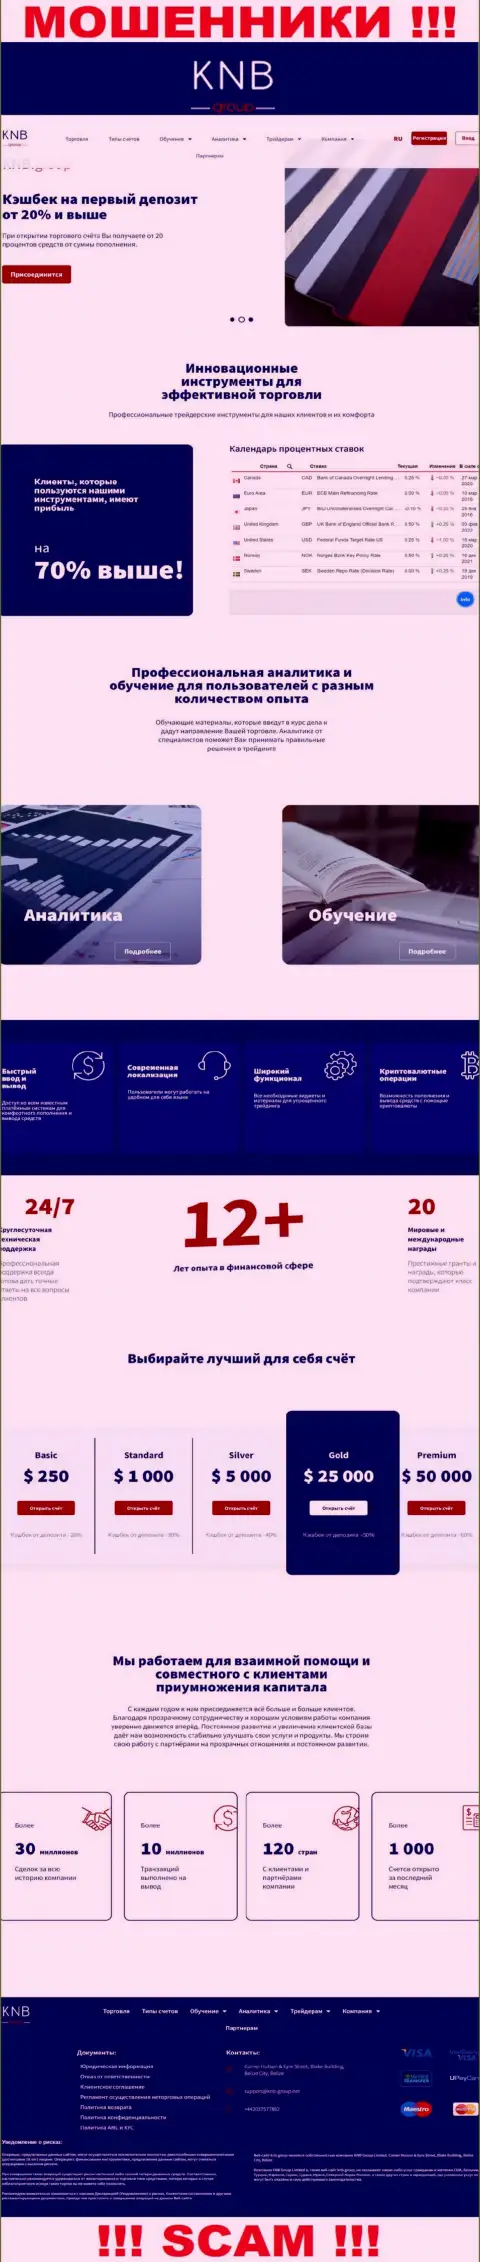 Обзор официального сайта мошенников KNB Group